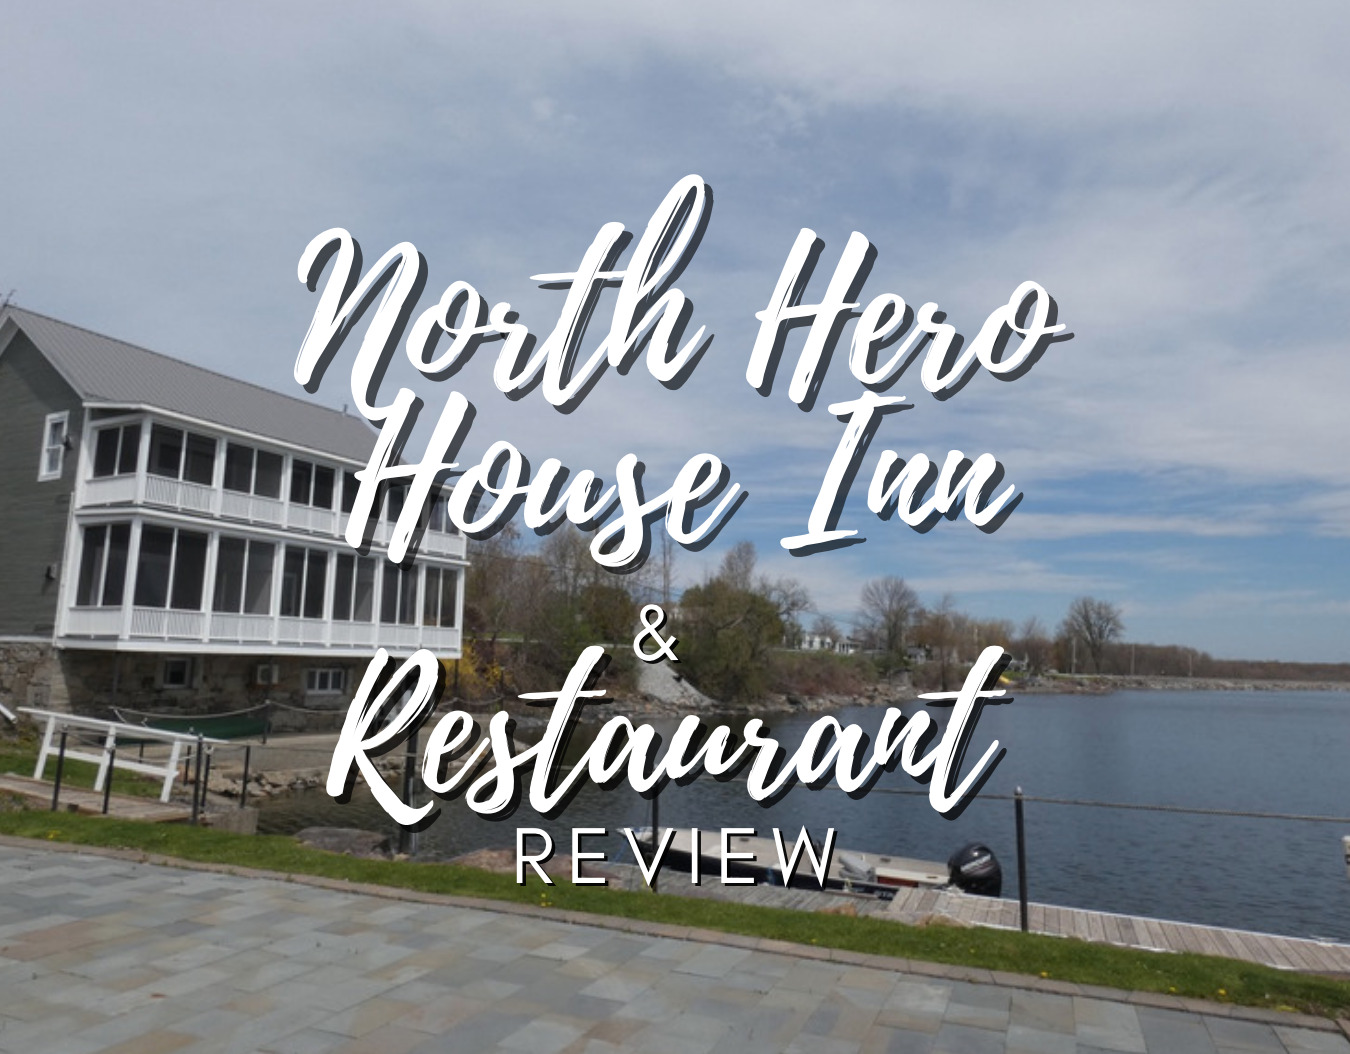 North Hero House Inn & Restaurant Review